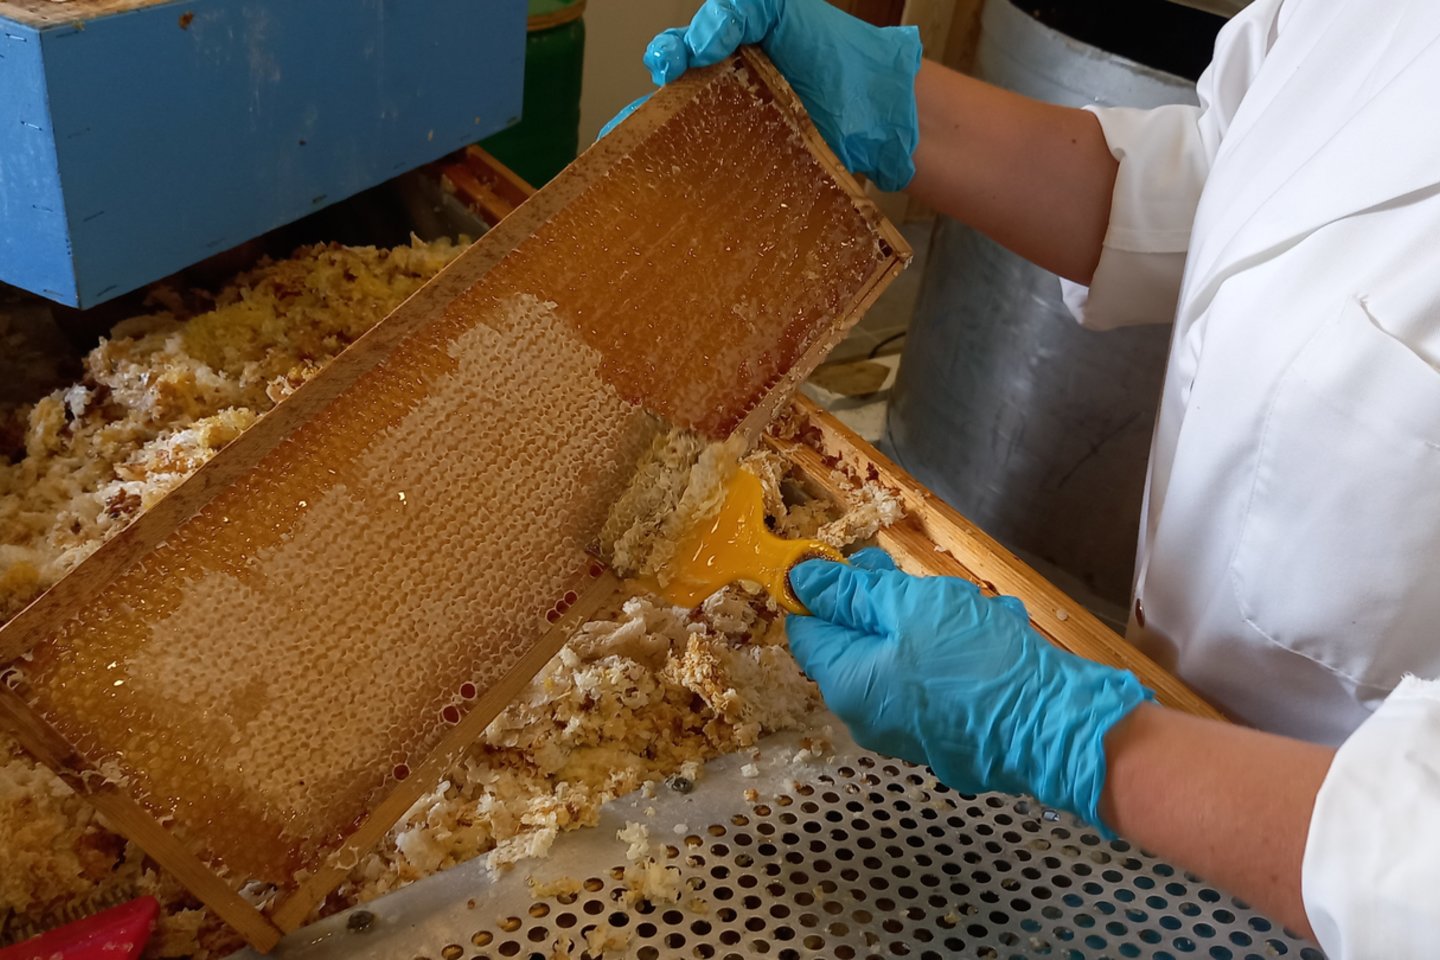  Lietuvos bitynų medus neužterštas ir yra saugus vartoti, tačiau dalis kiniško medaus gali būti suklastota.<br>Asmeninio albumo nuotr.